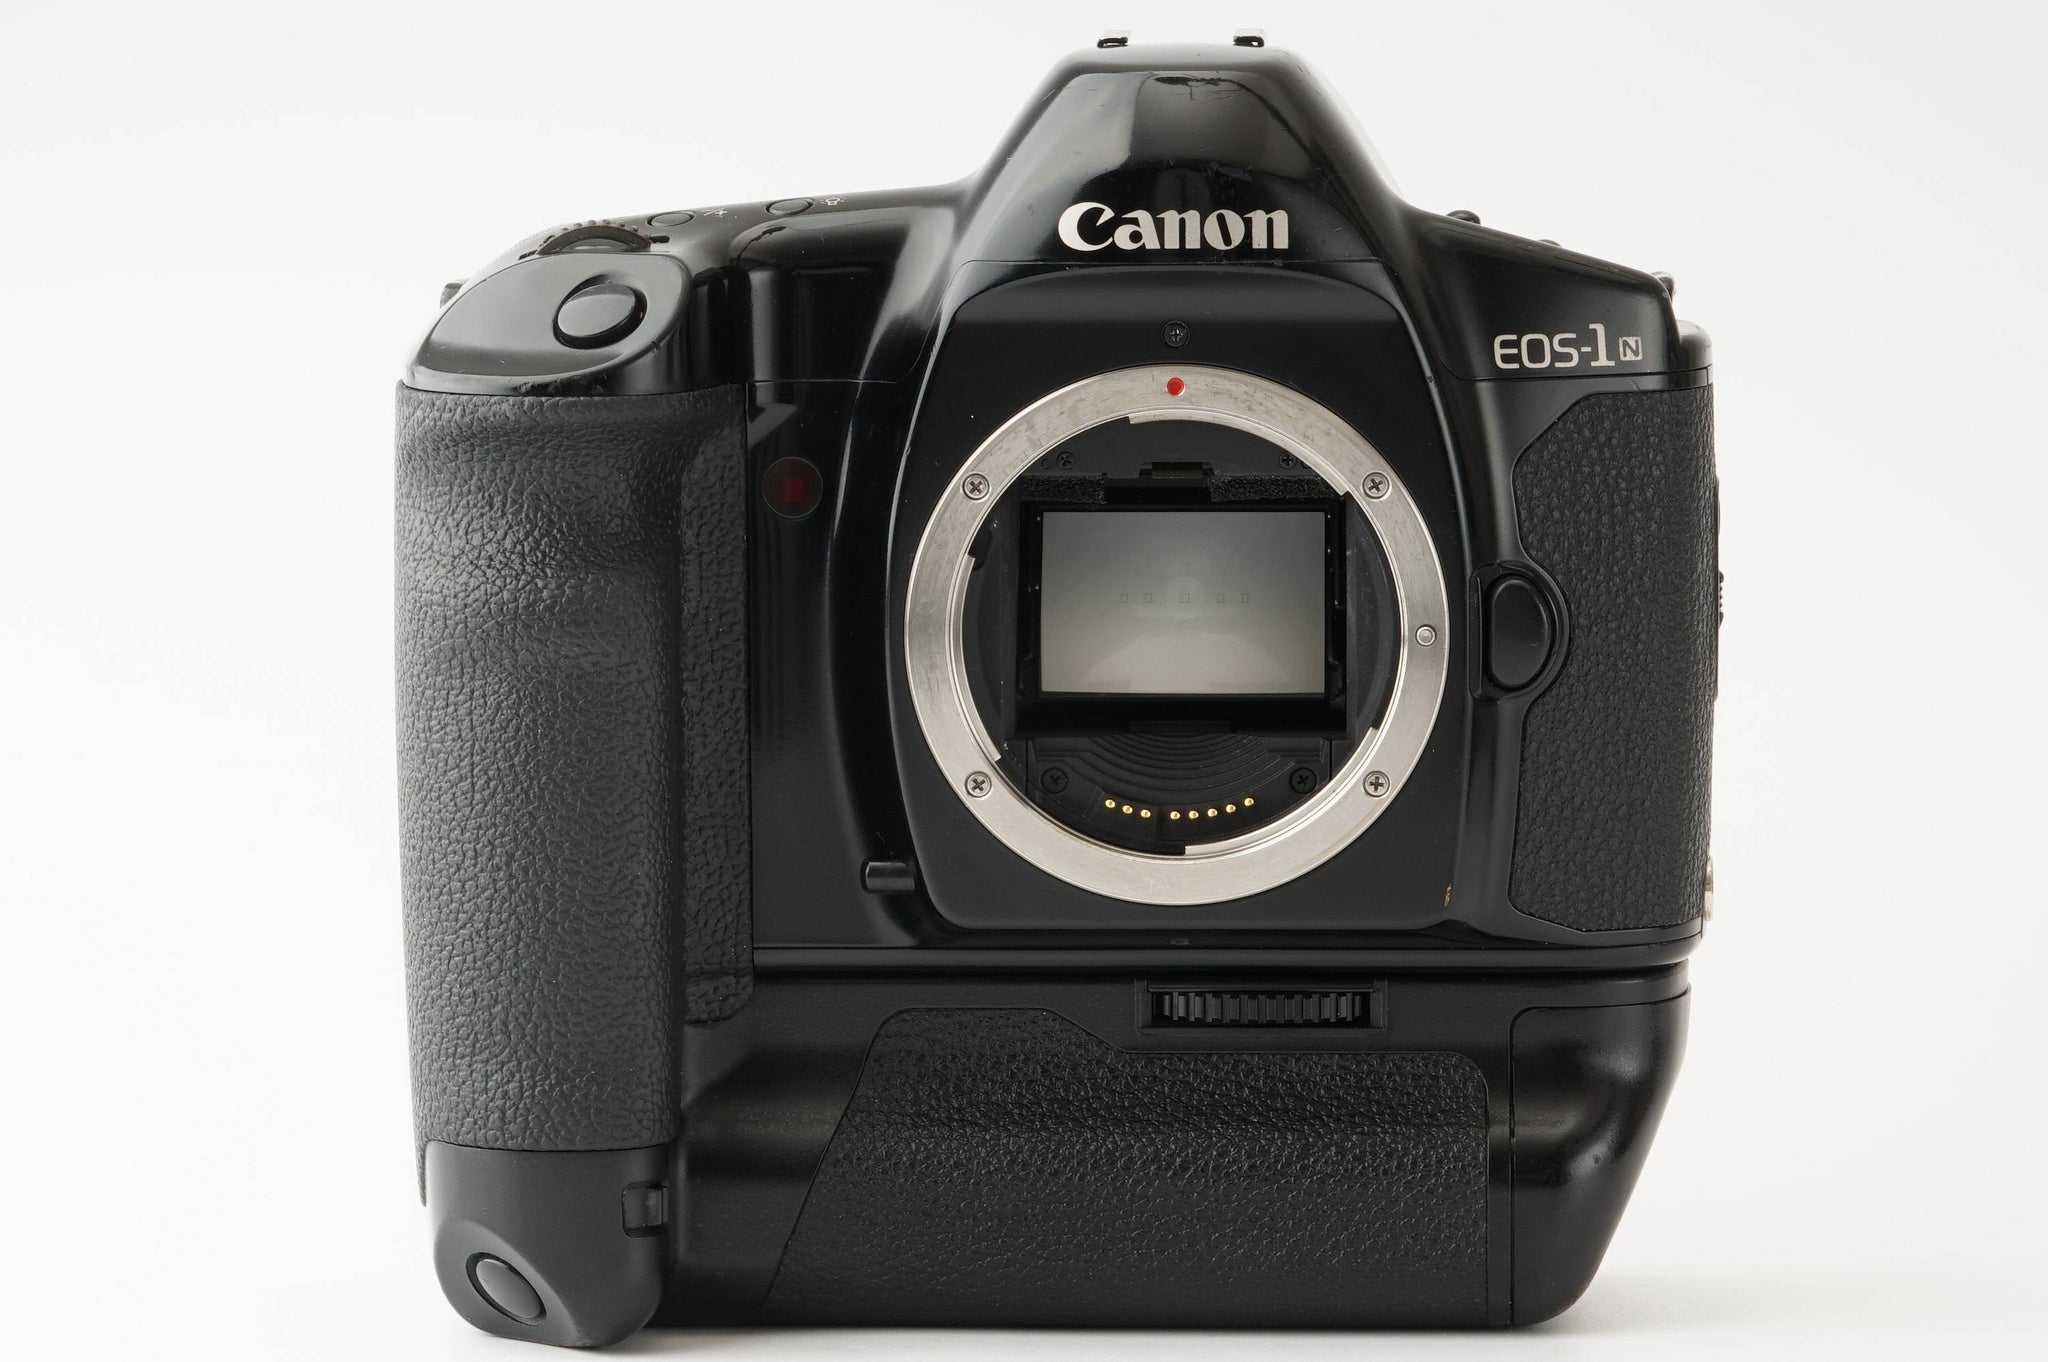 Canon EOS-1N HS Booster E1